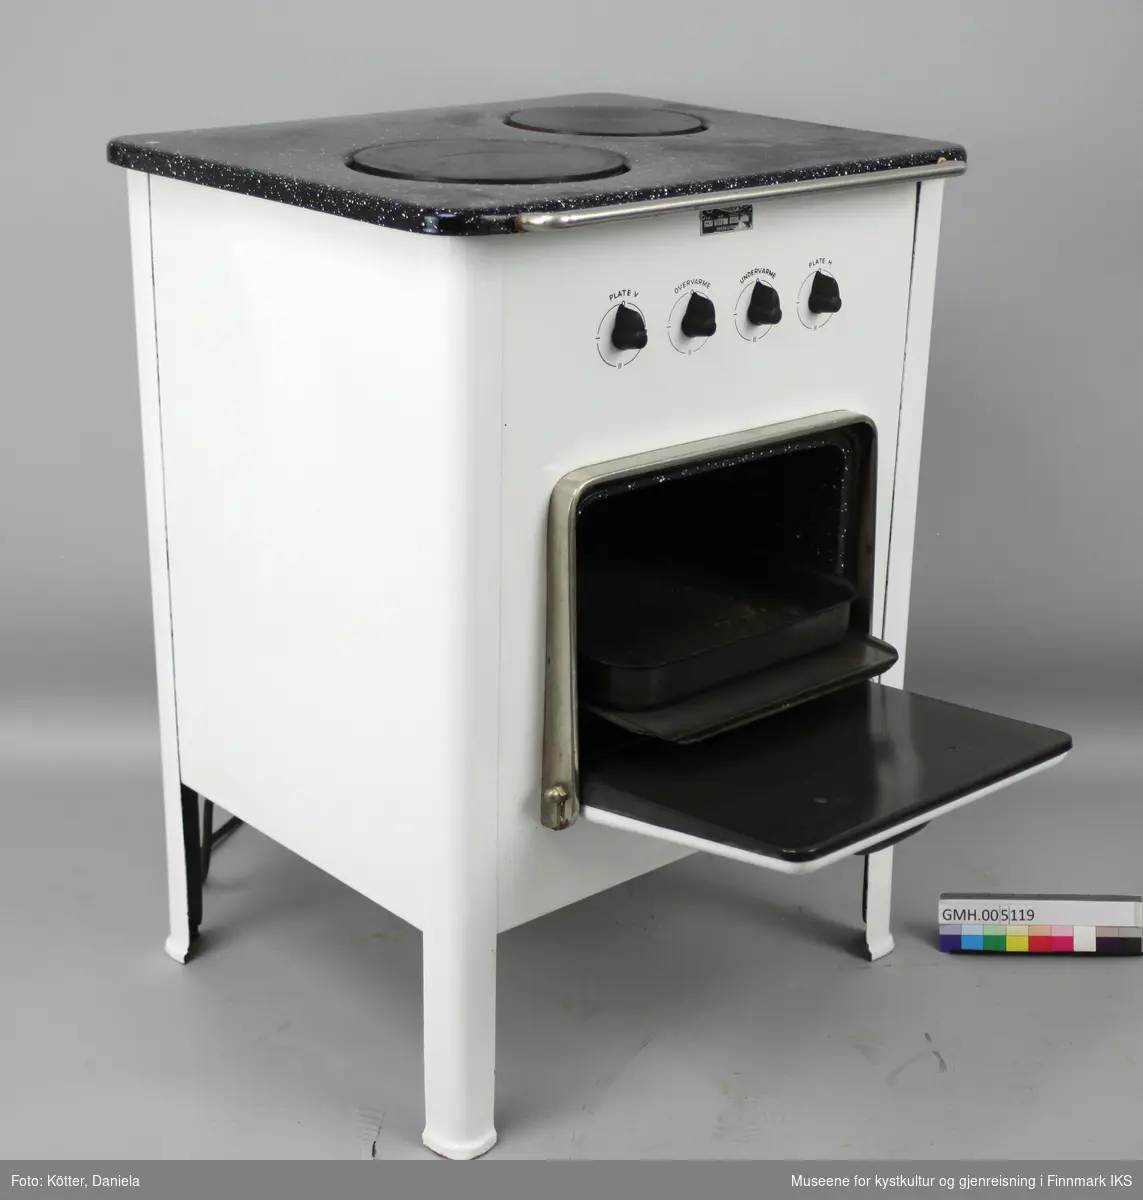 Den elektriske komfyren "Diamant PK 2" har to kokeplater og en stekeovn. Apparatet står på fire ben og har fire vrideknapper, en for hver plate, samt for over- og undervarme i ovnen. På ovnsdøra er det en rund termometer som viser temperaturen i ovnen. I ovnen er det to lave og et dypt stekebrett. Foran på toppen er det en sølvfarget stang.